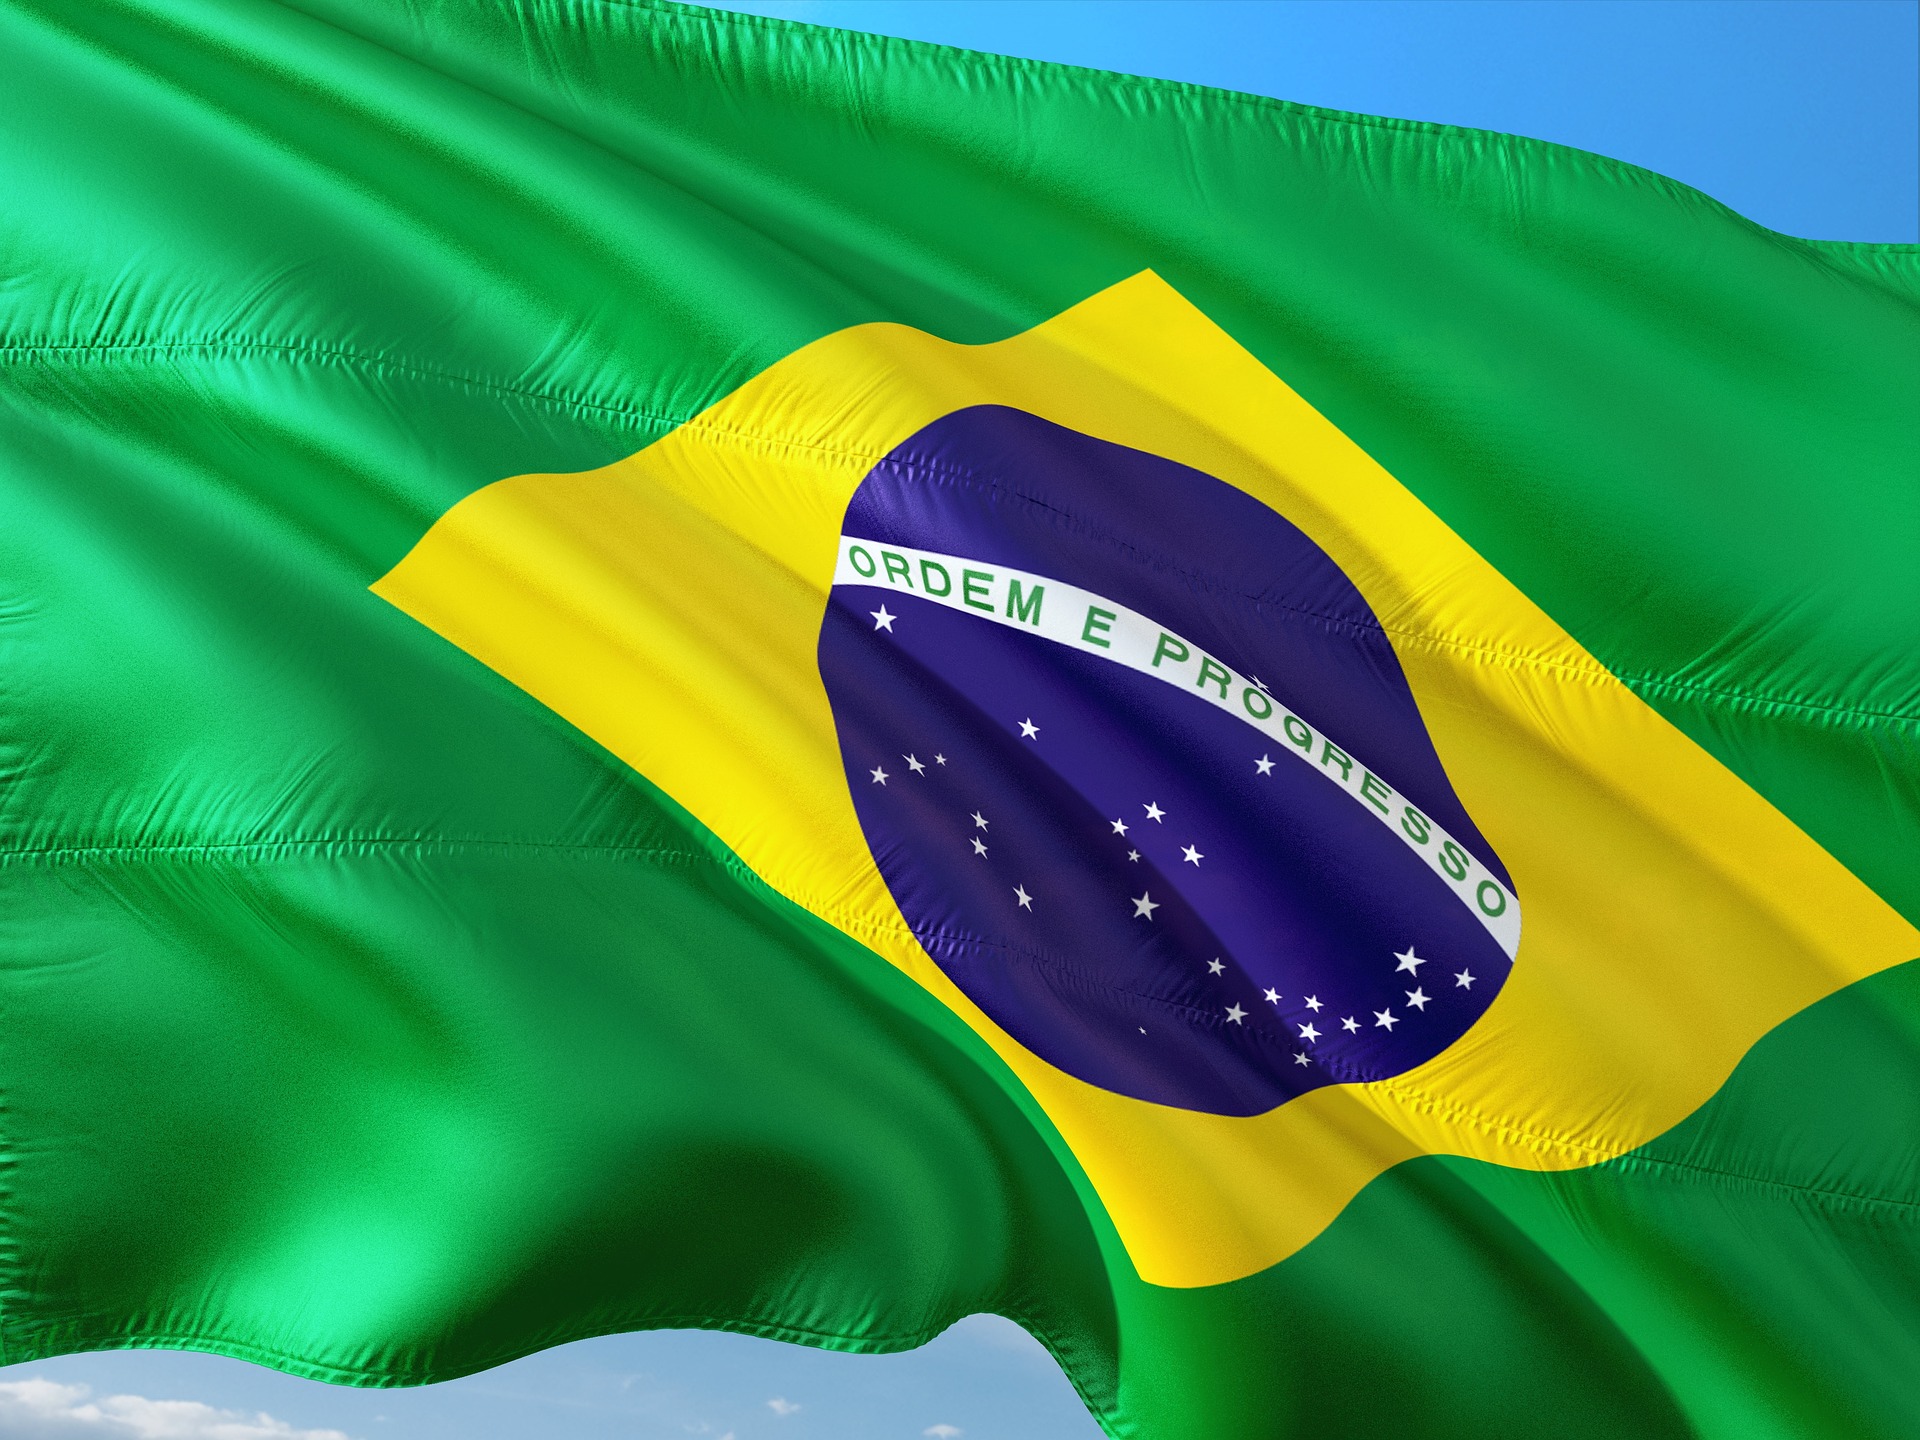 Brazil offers solution to turmoil in Ukraine